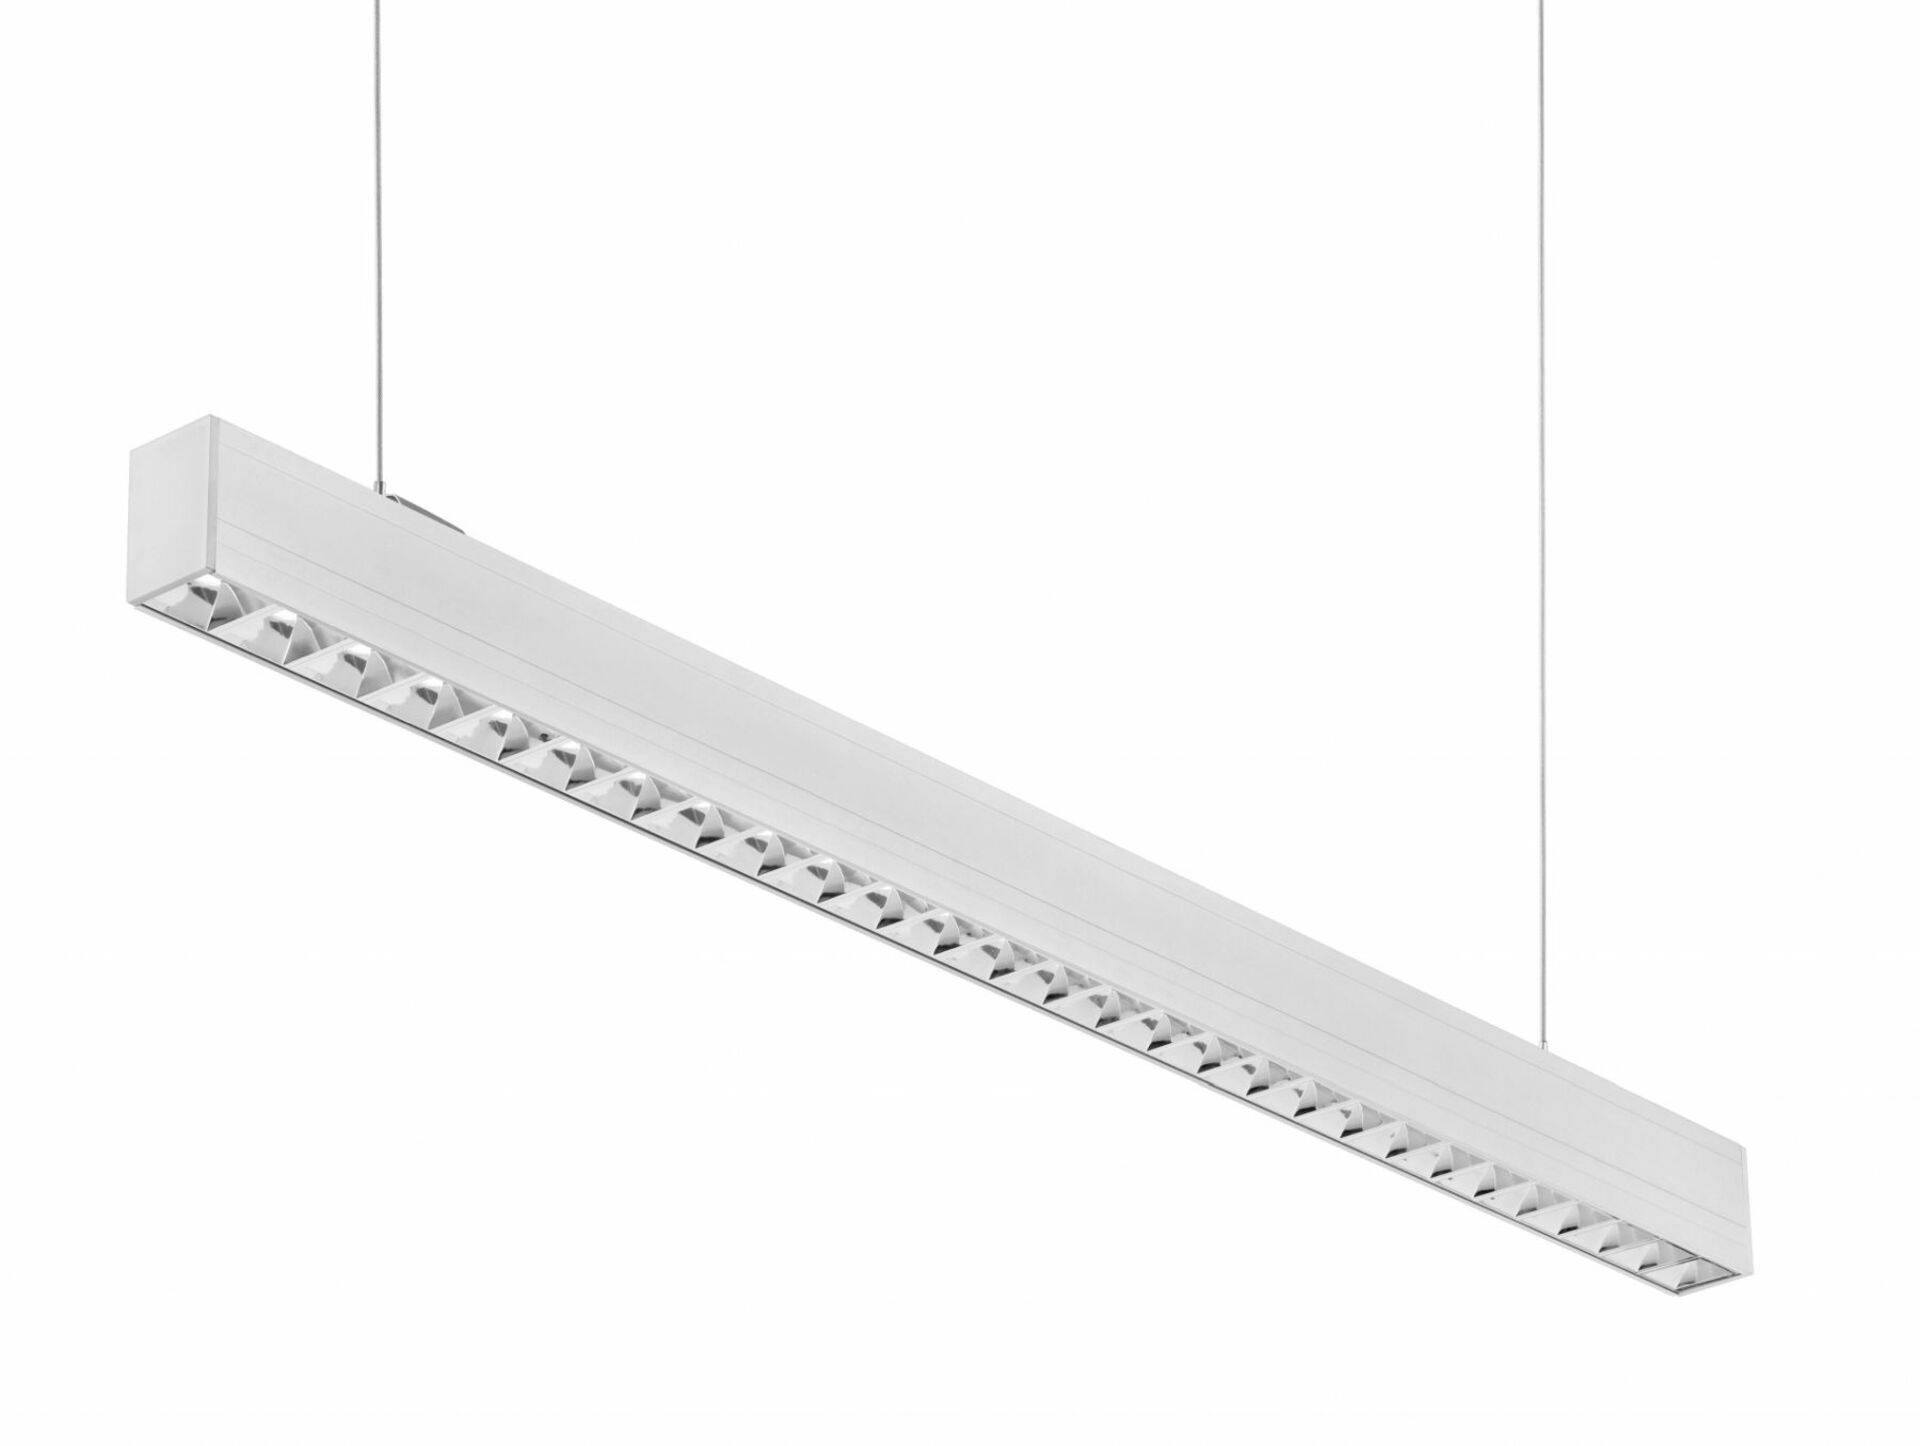 Levně CENTURY LED liniové svítidlo LINKY závěsné Parabolický reflektor 32W, 3200lm,4000K,Ra80, UGR16, 90d, IP20 ,1131x50x75mm, včetně 2ks závěsů 1,5m